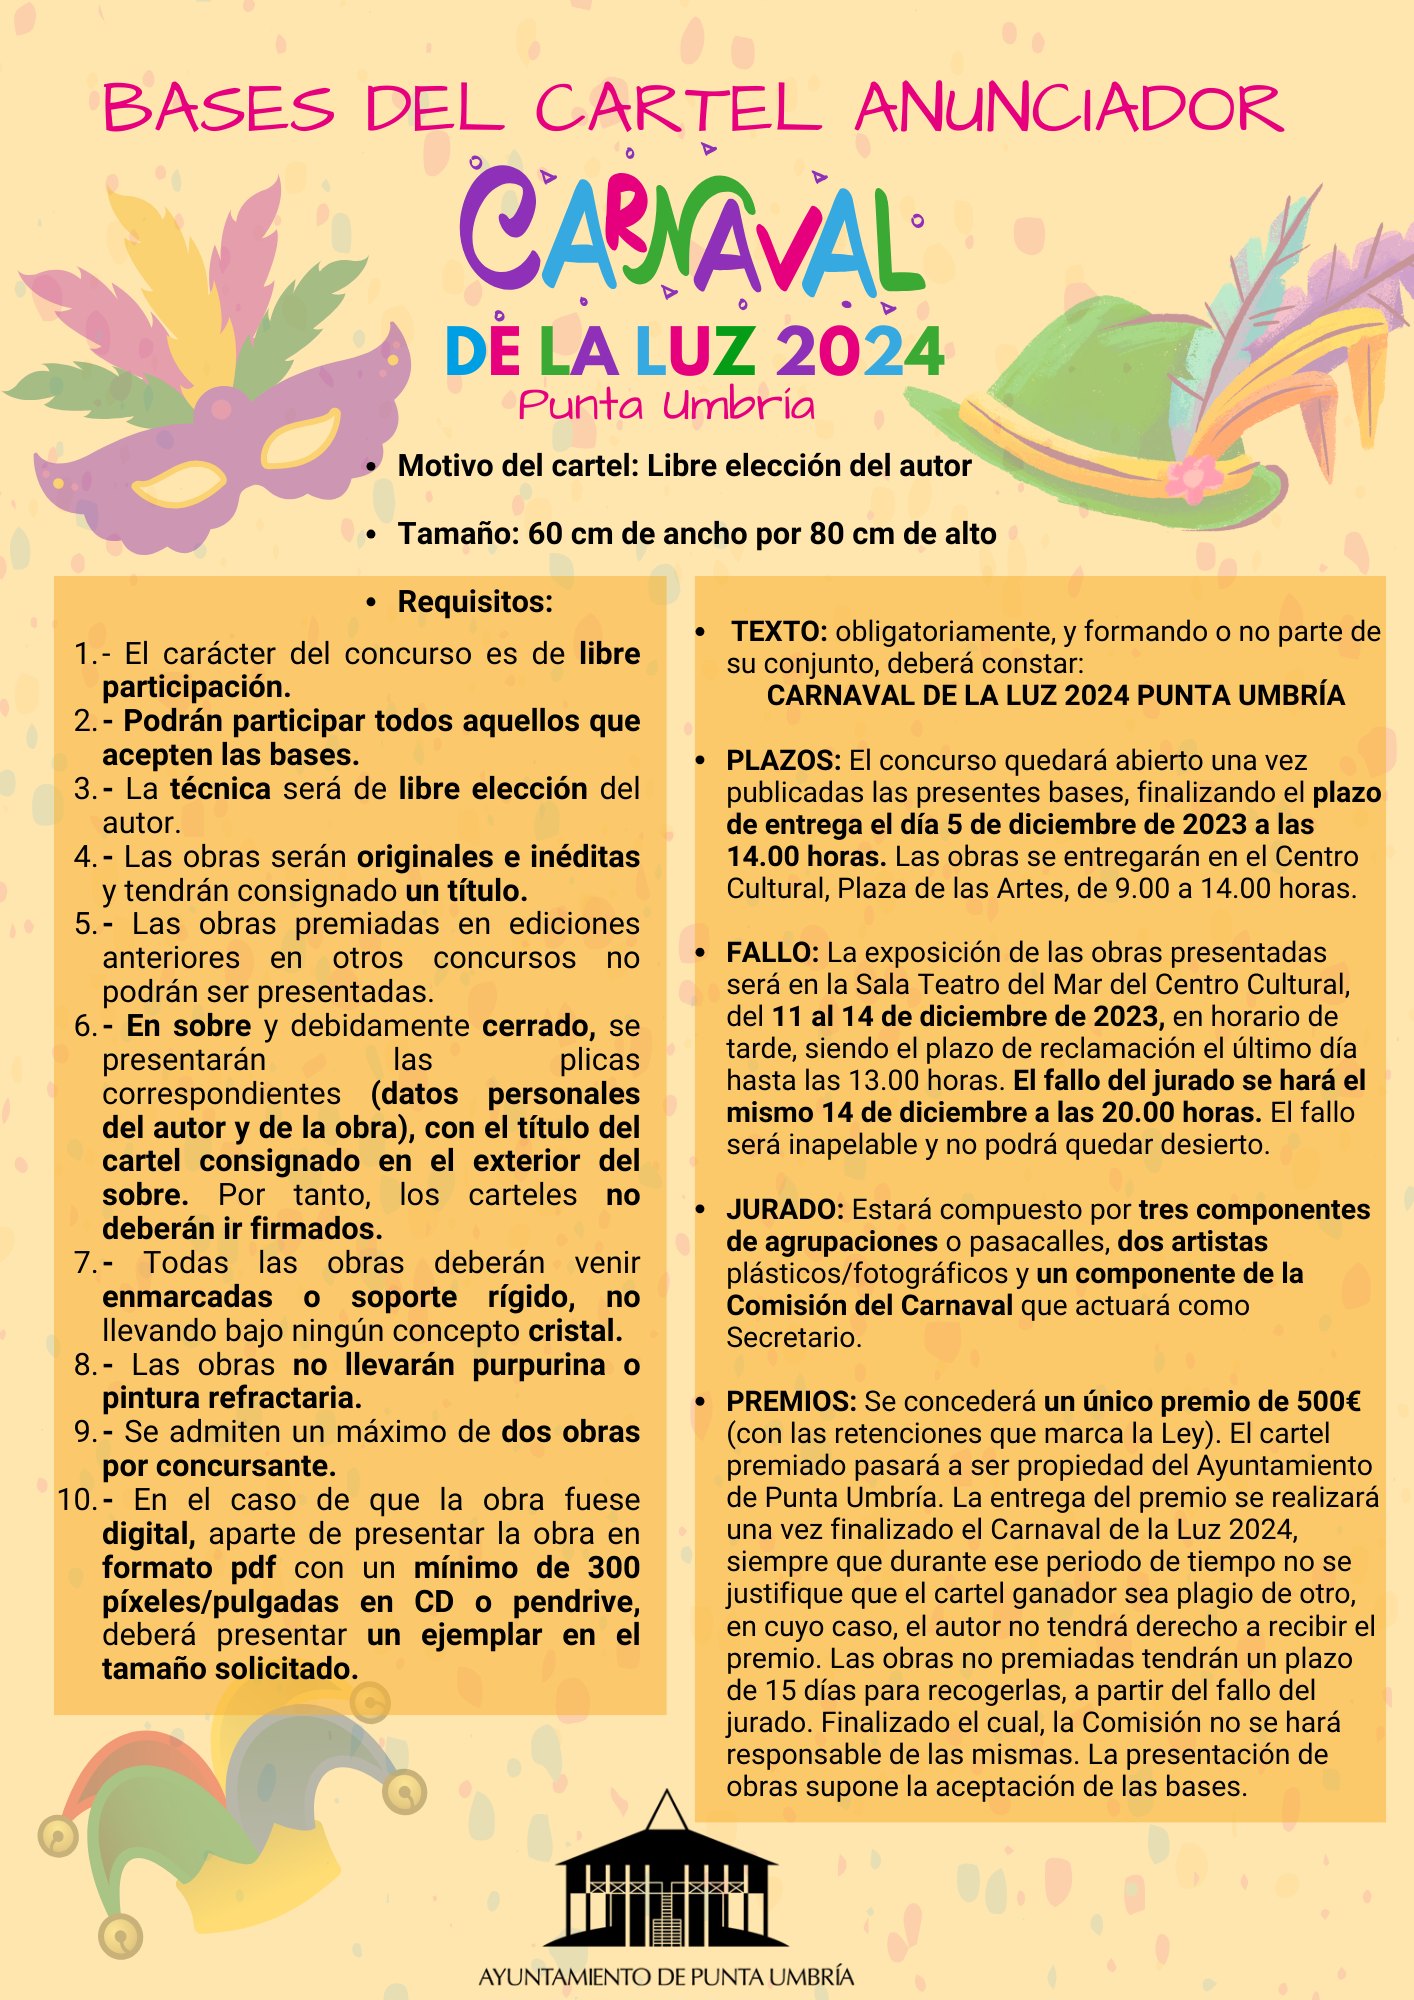 El plazo para participar en el concurso del cartel anunciador del Carnaval de la Luz 2024 de Punta Umbría finaliza mañana martes